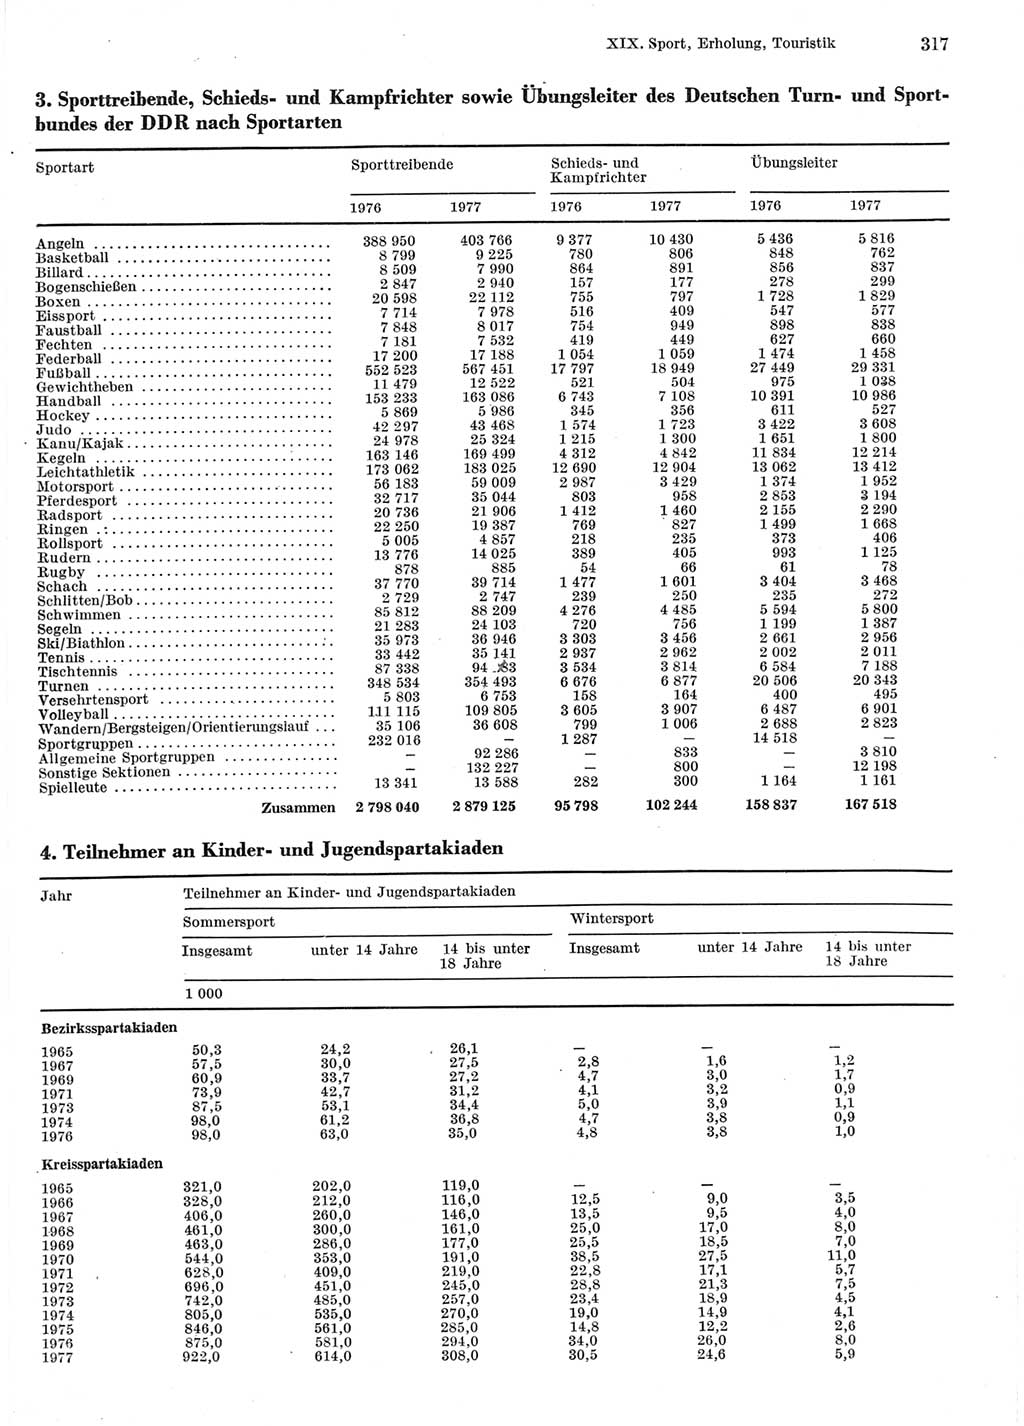 Statistisches Jahrbuch der Deutschen Demokratischen Republik (DDR) 1978, Seite 317 (Stat. Jb. DDR 1978, S. 317)